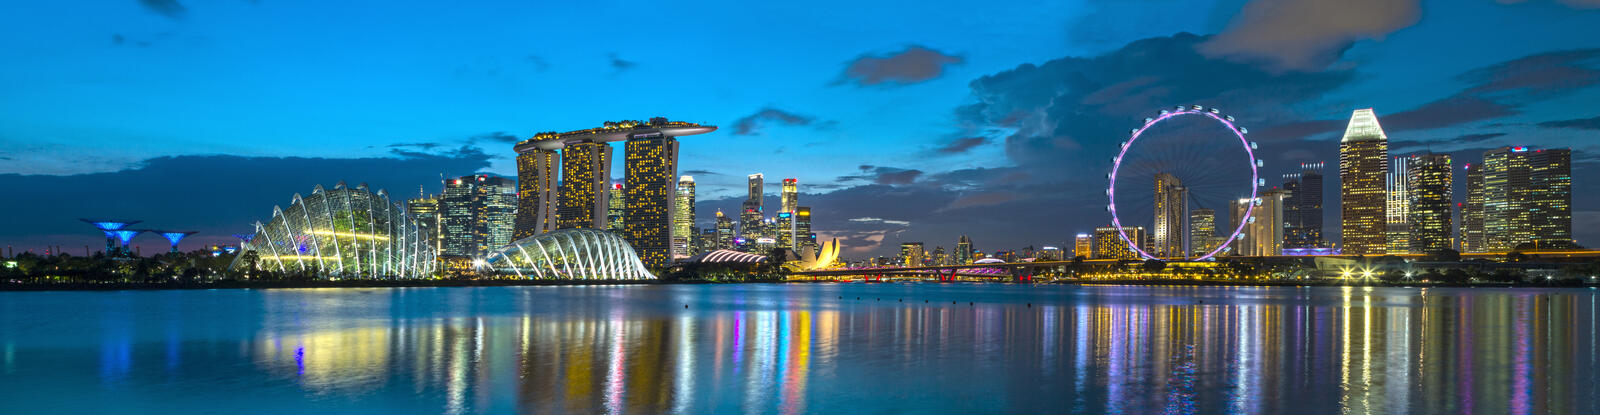 Wallpapers panorama Singapore night on the desktop